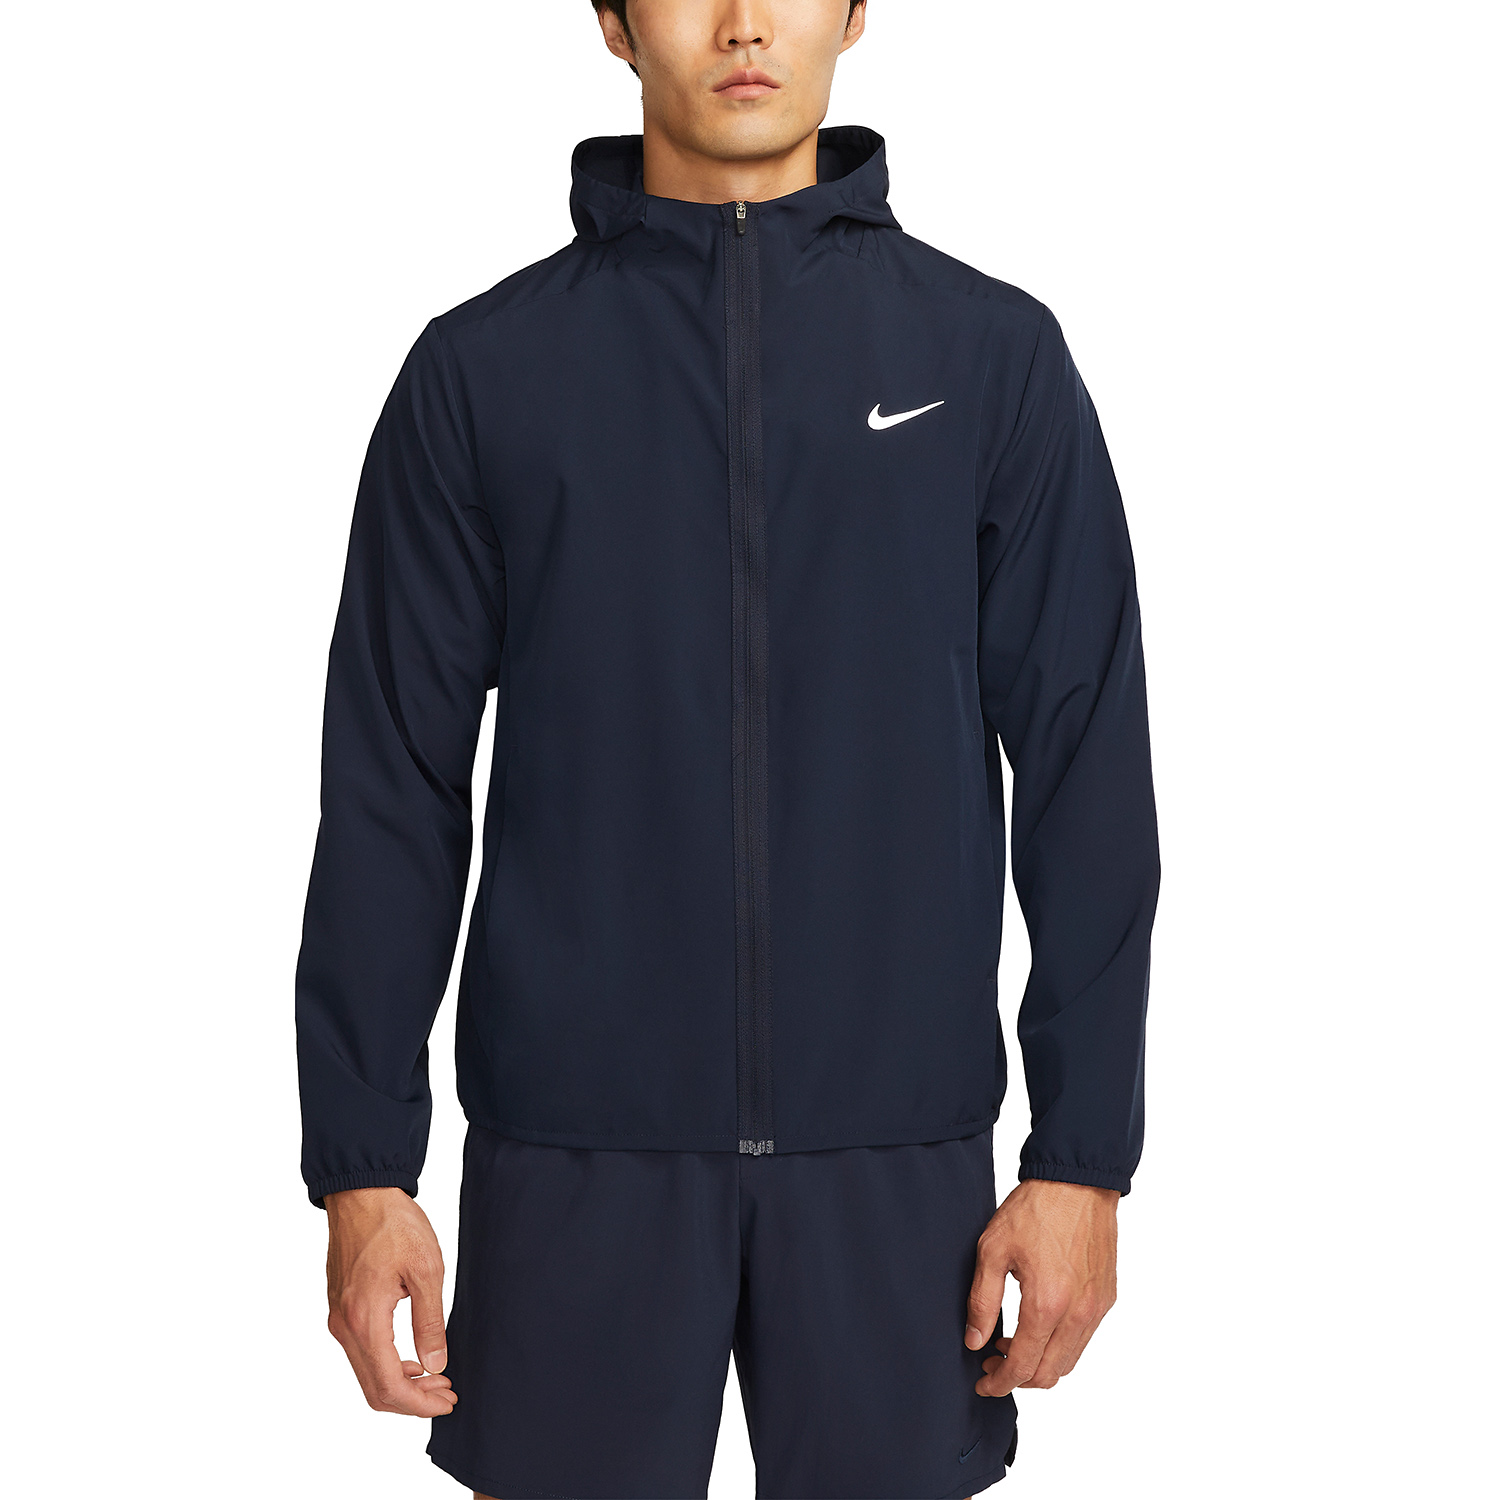 Nike Dri-FIT Form Men's Training Jacket - Black